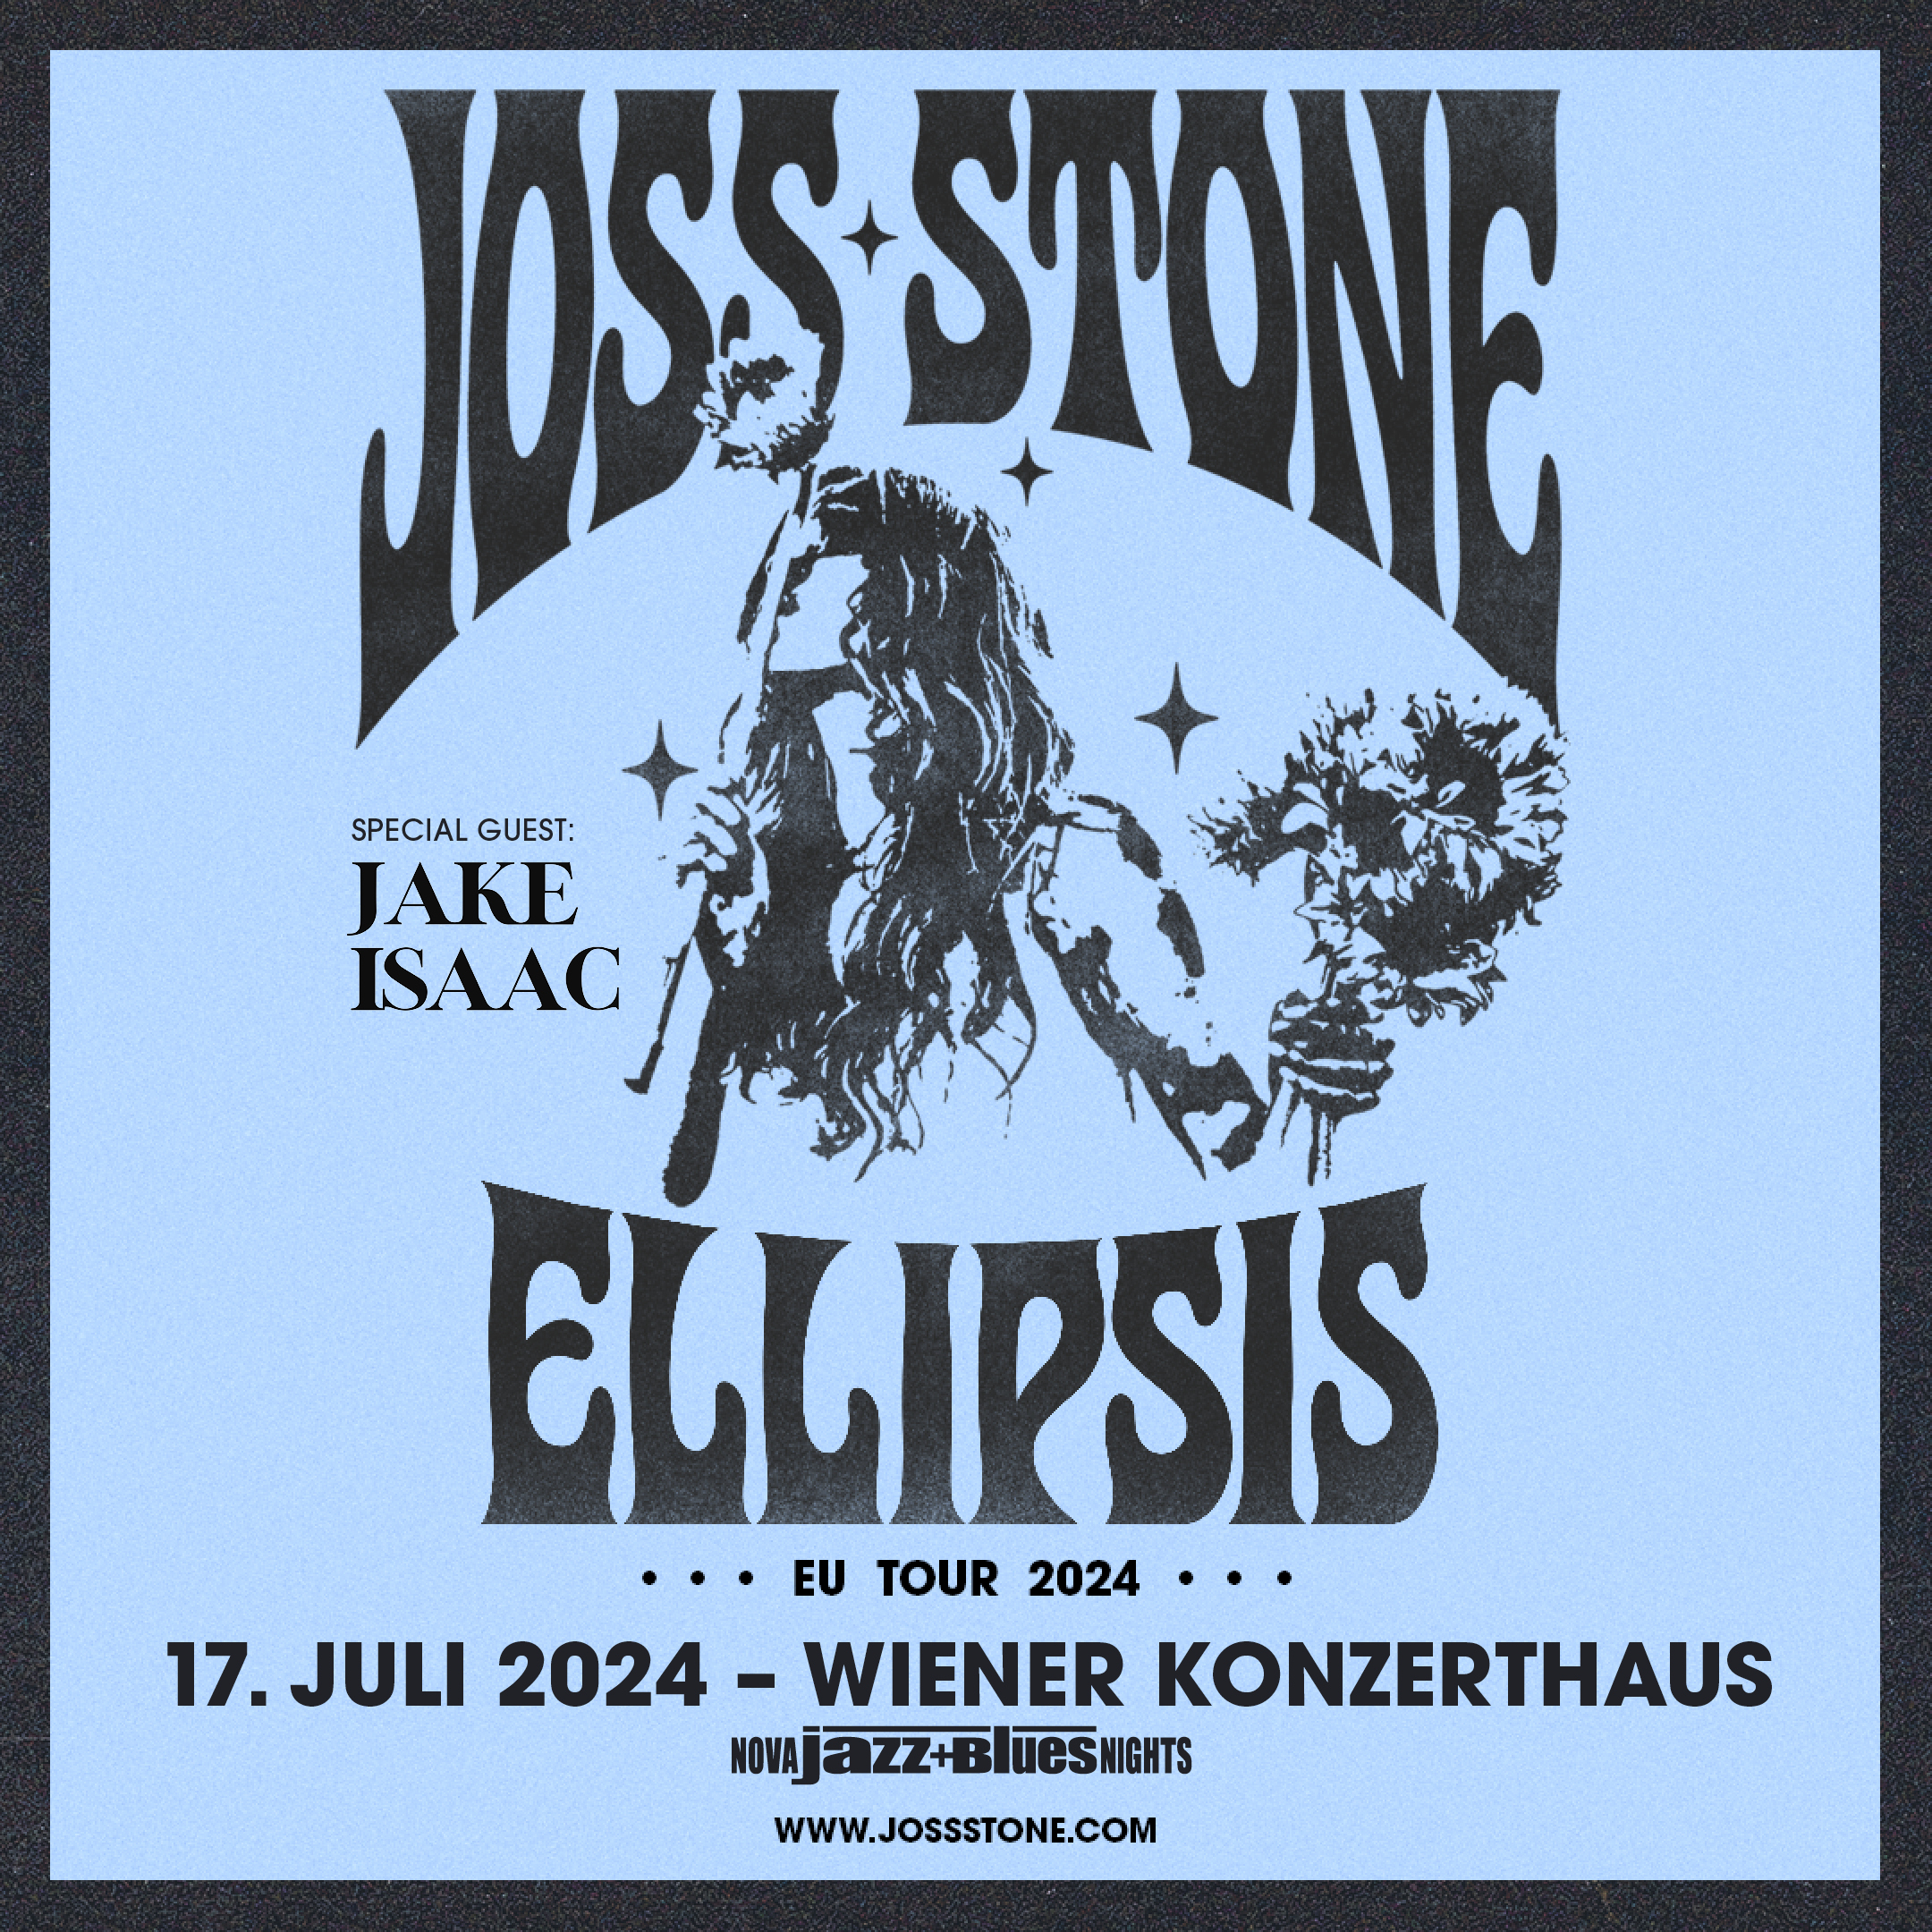 Joss Stone am 17. July 2024 @ Wiener Konzerthaus.